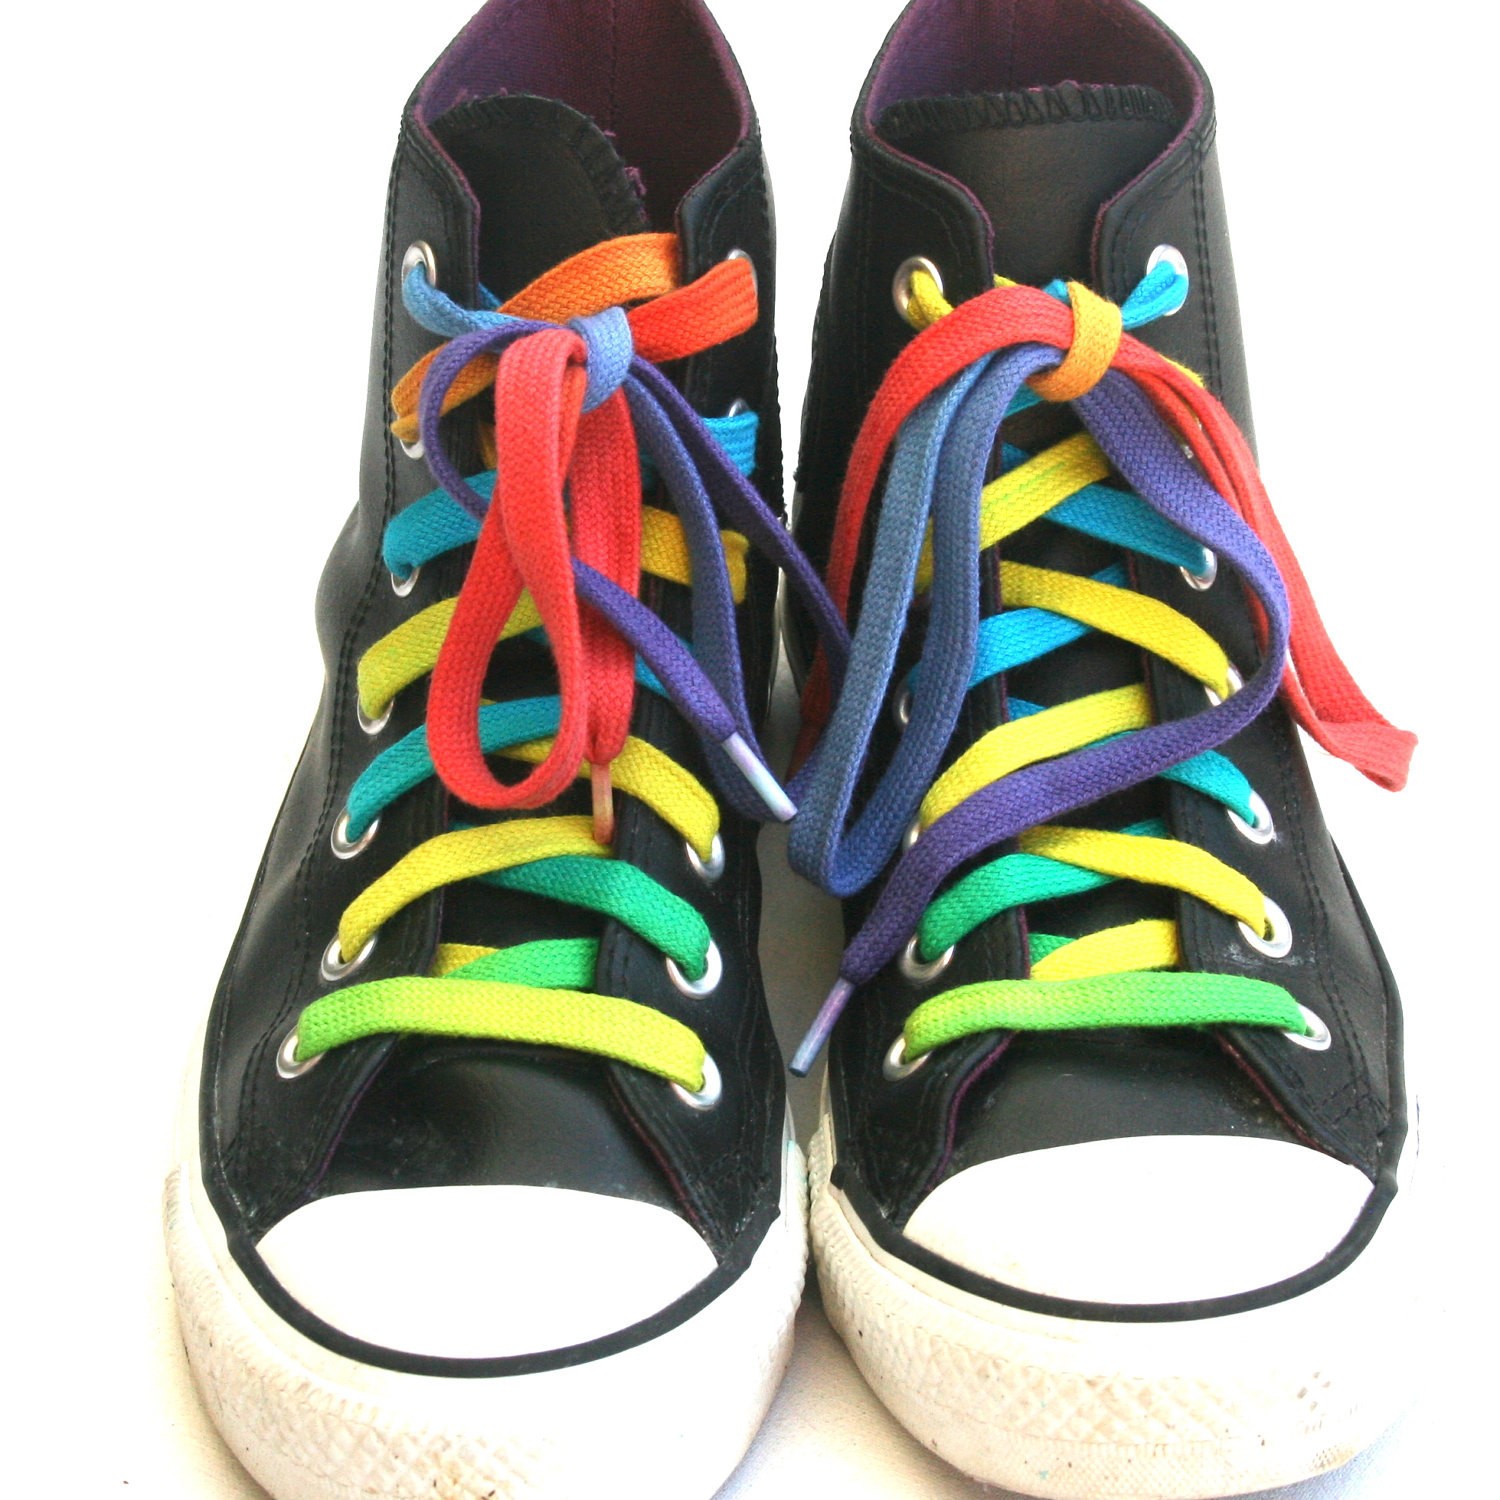 PK Shoelaces